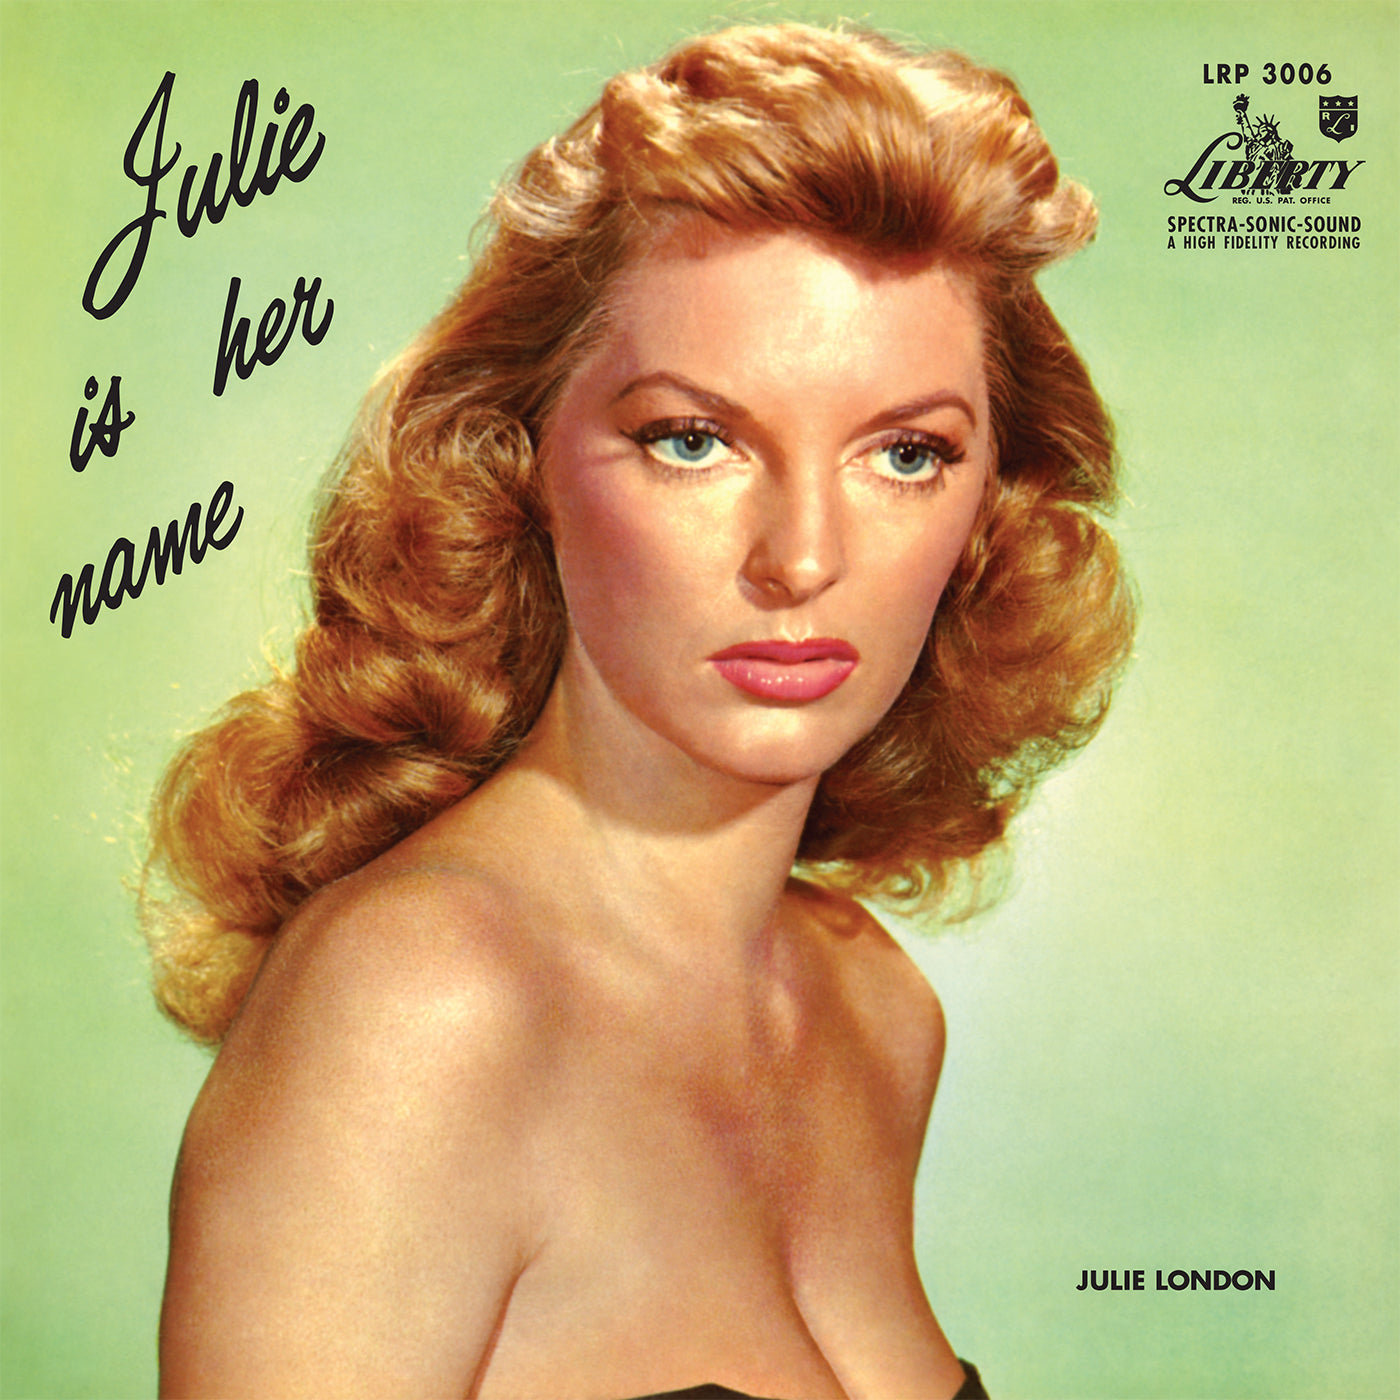 Julie London - Julie Is Her Name [2LP, 45 RPM]